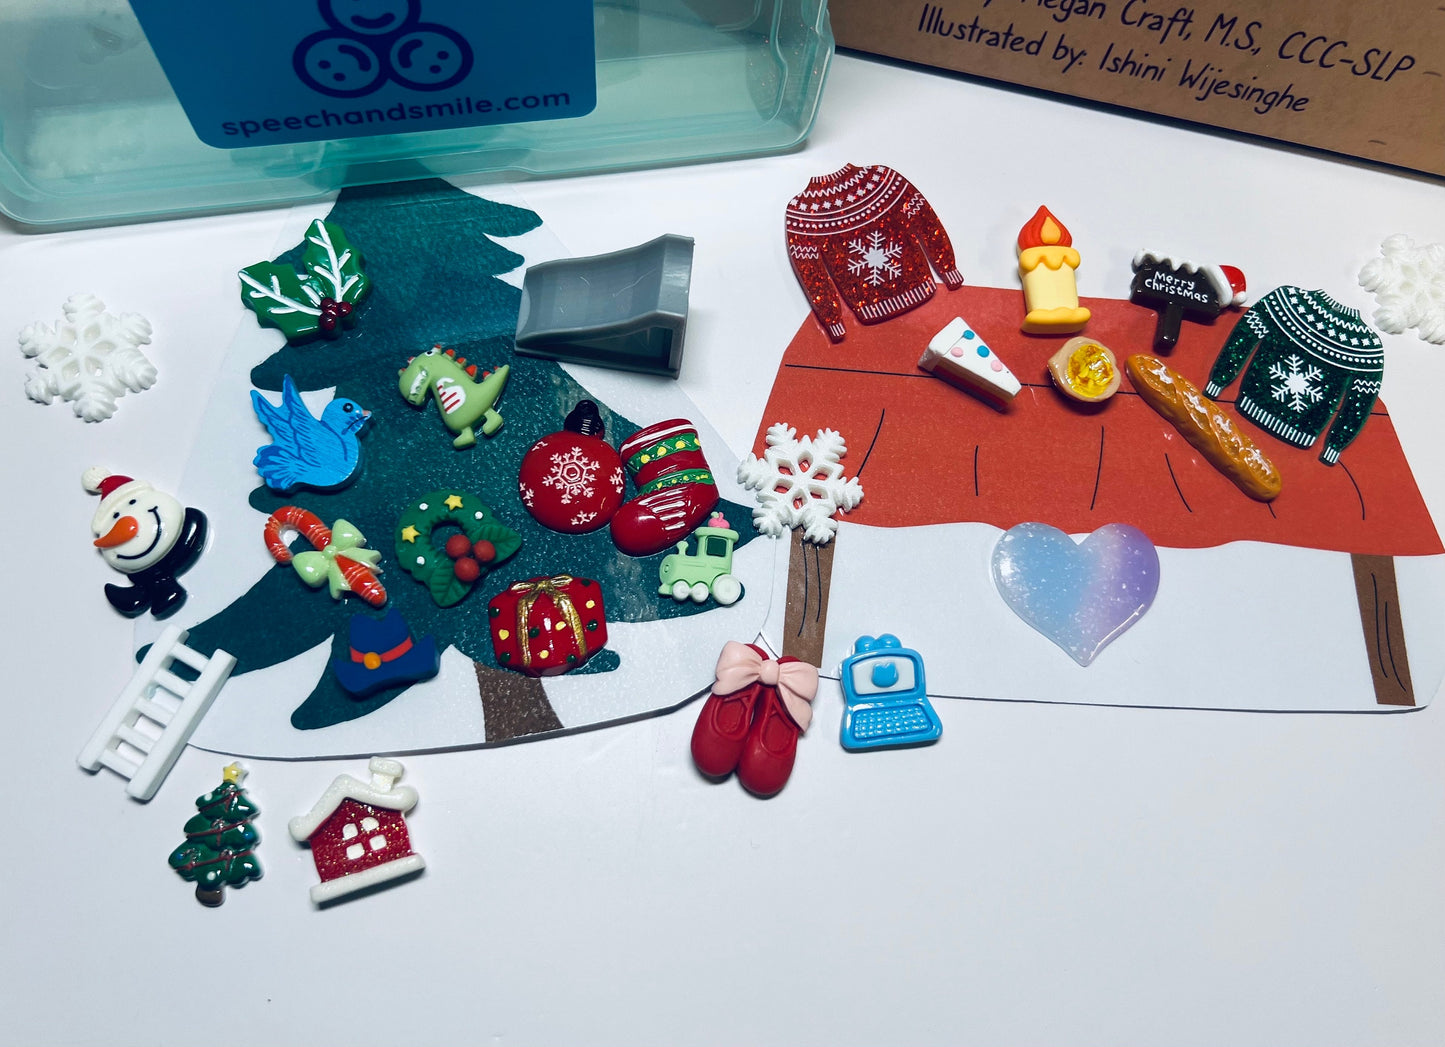 Kit de cuentos navideños para una misión muy feliz Inclusión Libro de Navidad-Baratijas-Libro inclusivo-Terapia del habla Mini objetos-Libro regalo